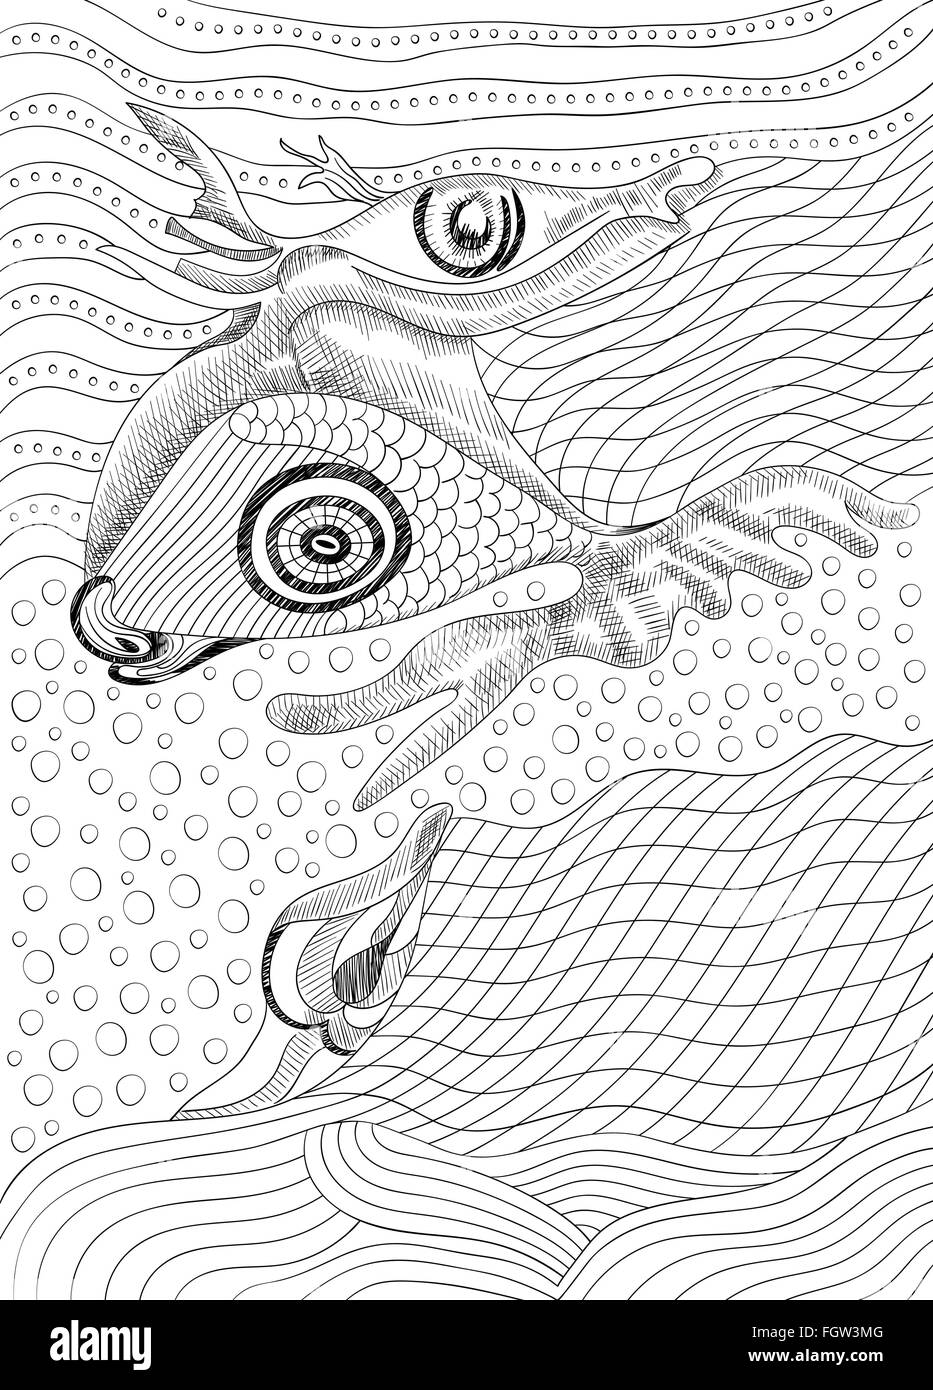 Surreal dessin à la main et le poisson, modèle abstrait avec contours noirs, peuvent utiliser pour les affiches, autocollants, cartes à colorier Illustration de Vecteur